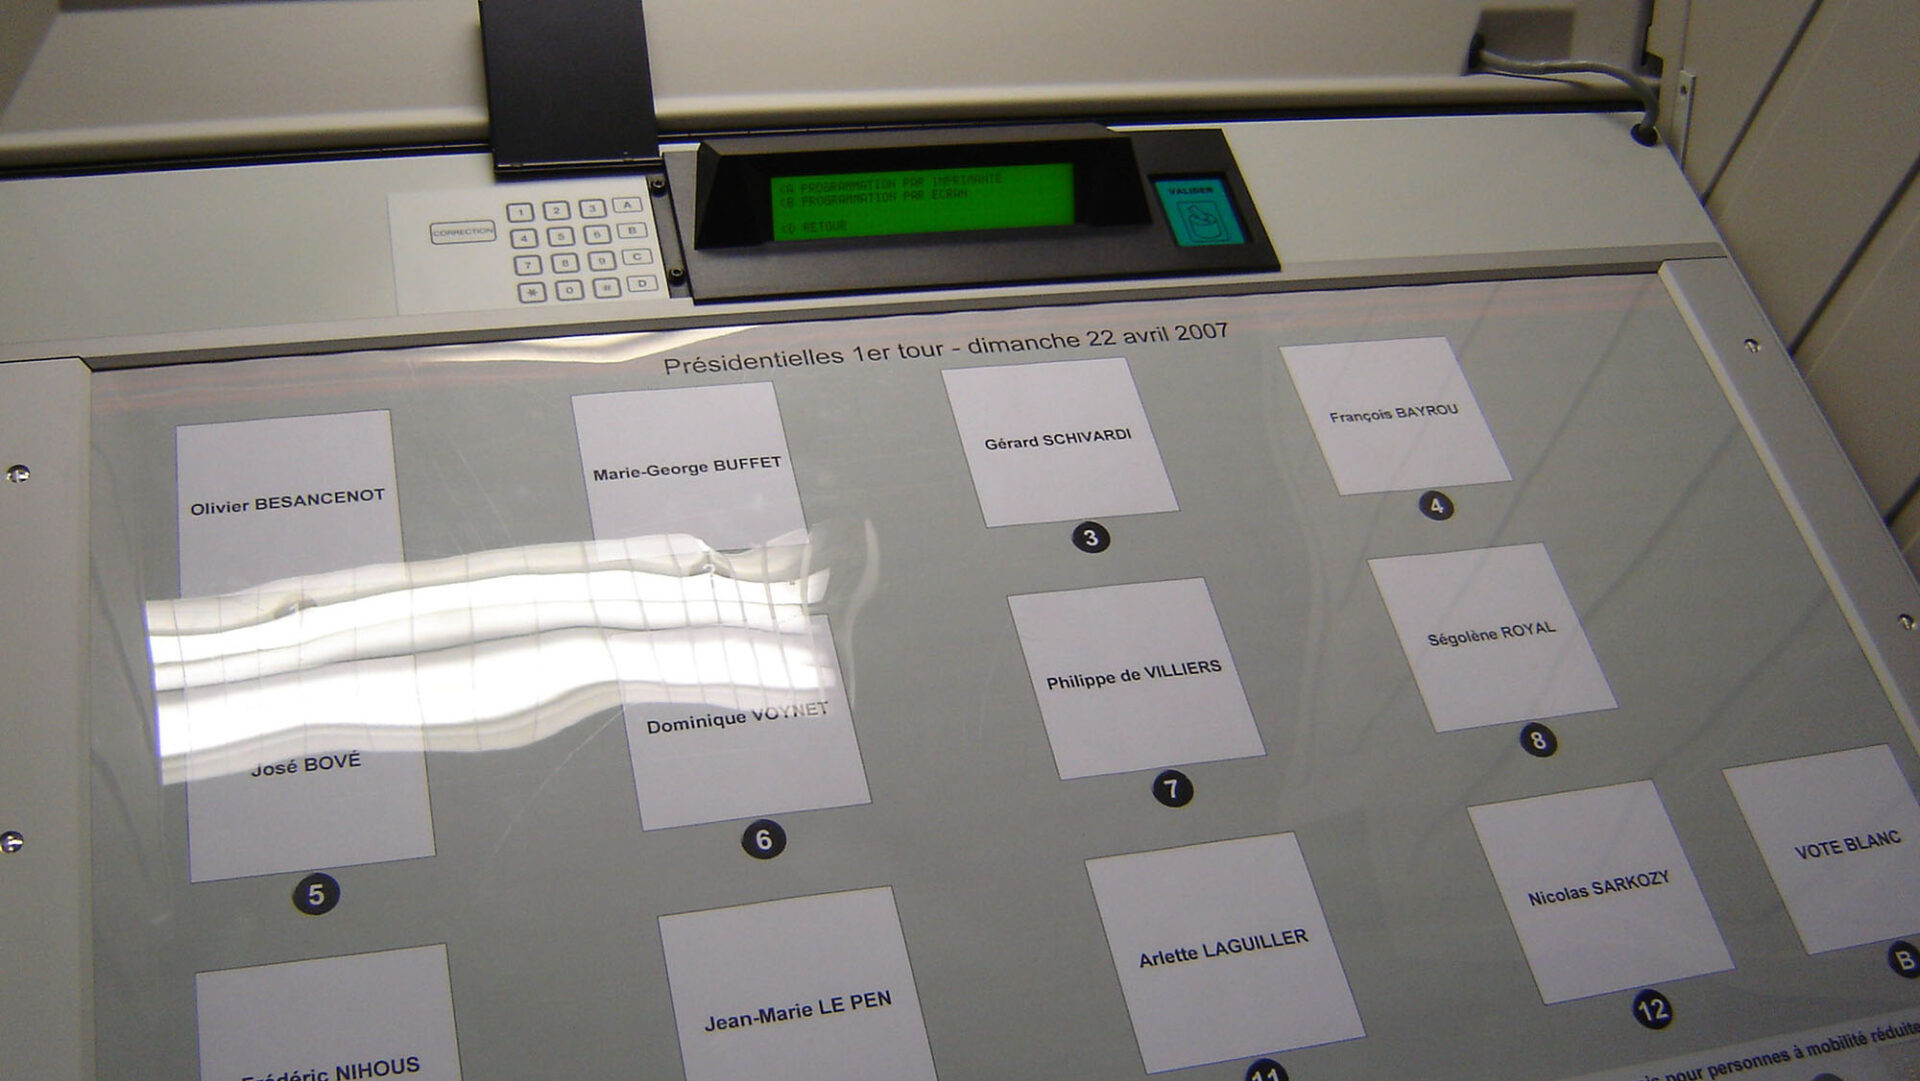 Des machines à voter. // Source : François et fier de l'Être